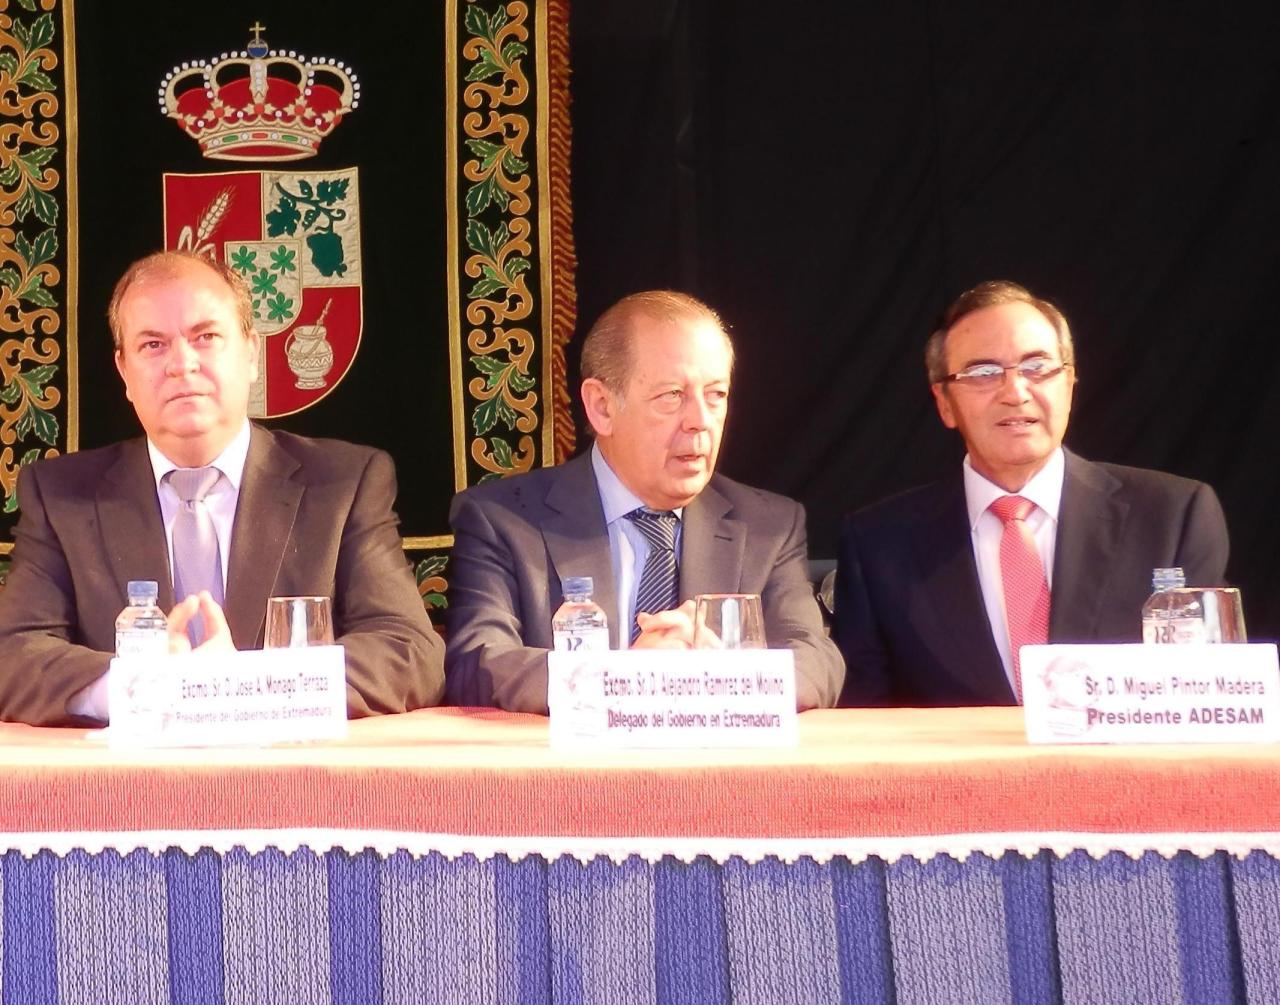 El Delegado del Gobierno en Extremadura, Alejandro Ramírez del Molino, visita la <br/>IV Feria ‘El Caldero’ de Santa Marta<br/>